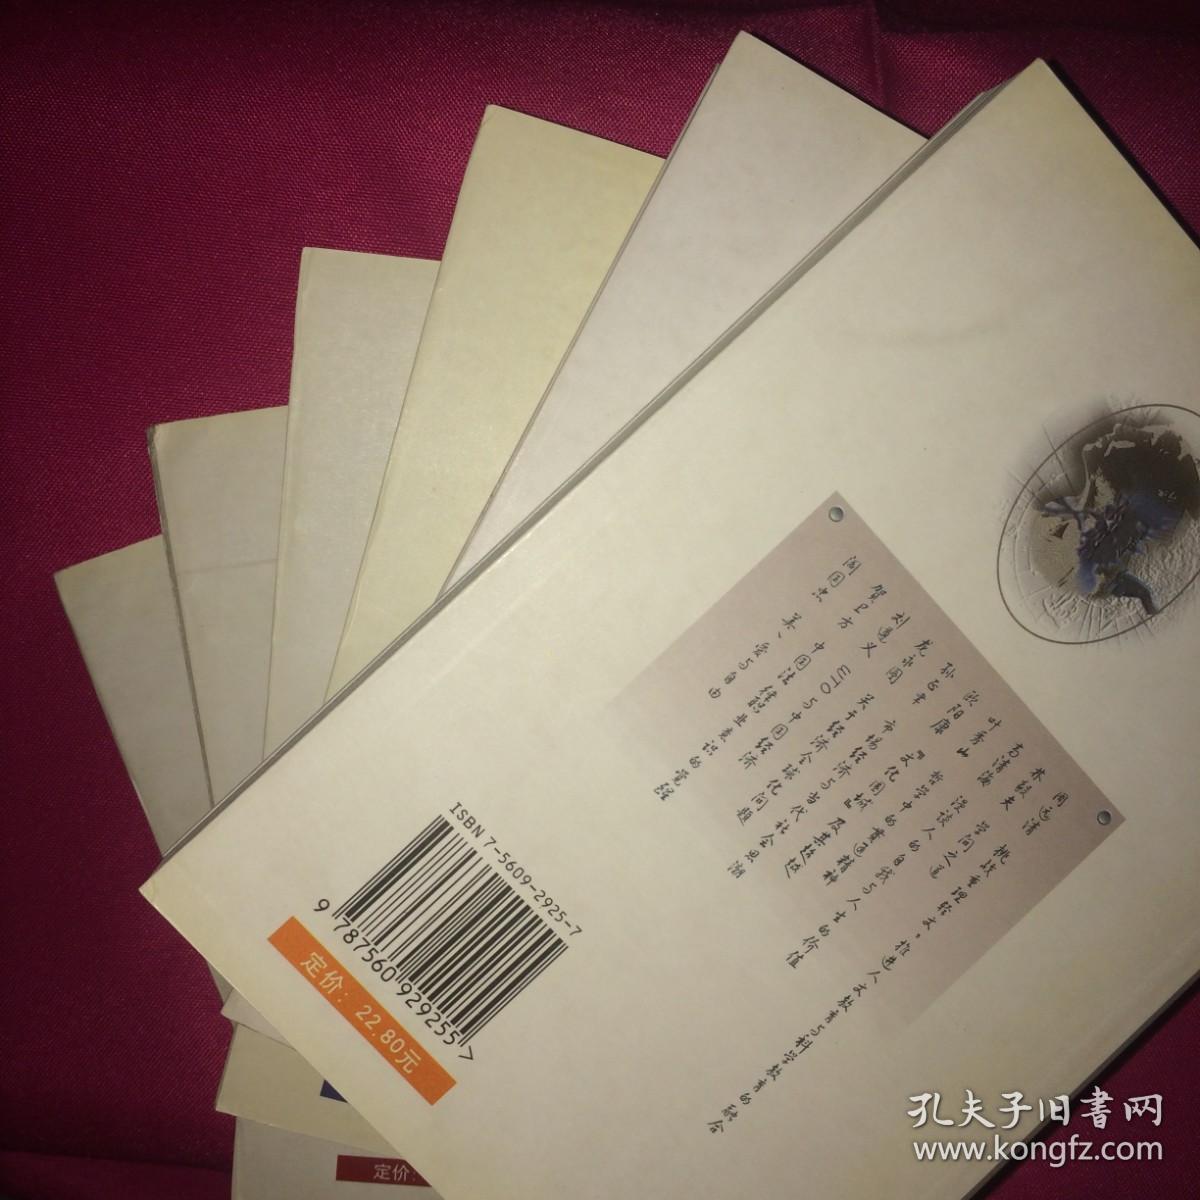 中国大学人文启思录 123456 六卷全 私人藏书 呵护备至